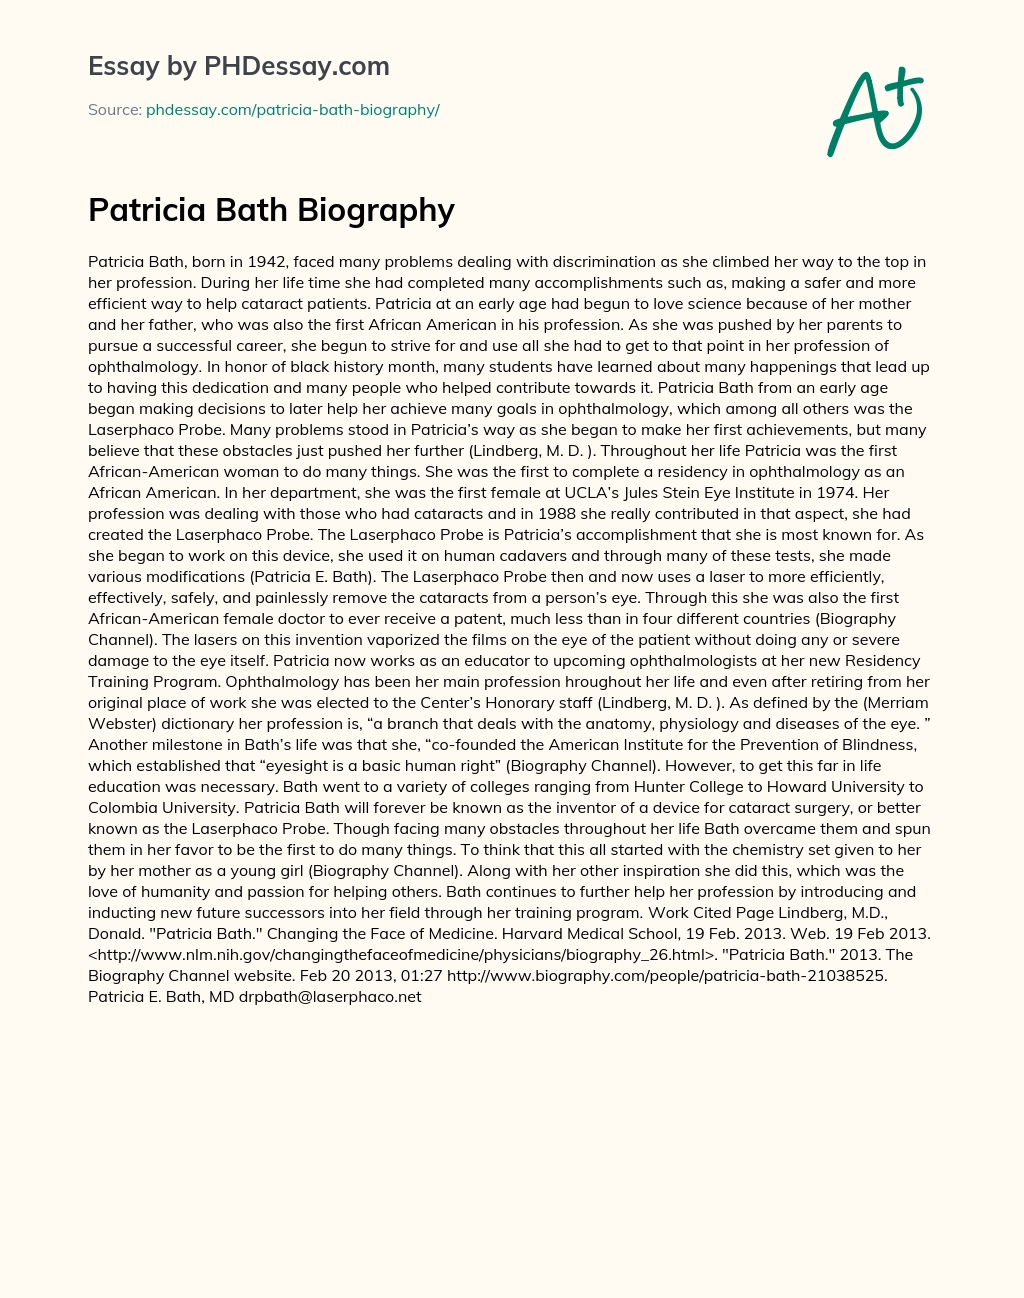 Patricia Bath Biography essay